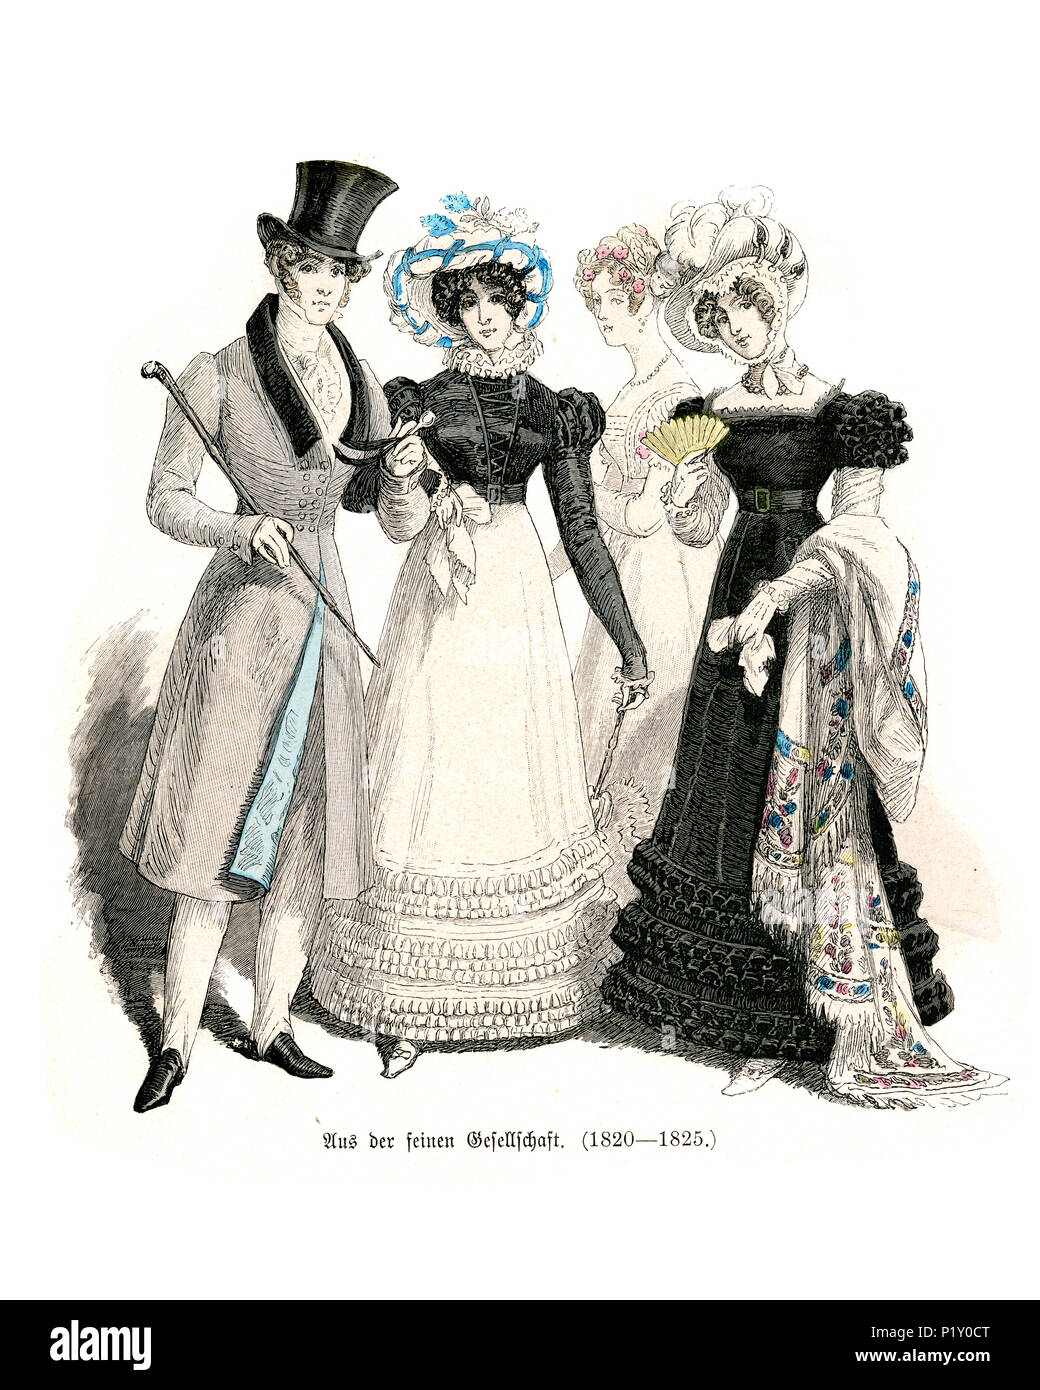 Vintage grabado de la historia de la moda, trajes de Alemania a principios  del siglo XIX. Bien la sociedad, el hombre y la mujer de 1820 a 1825  Fotografía de stock - Alamy